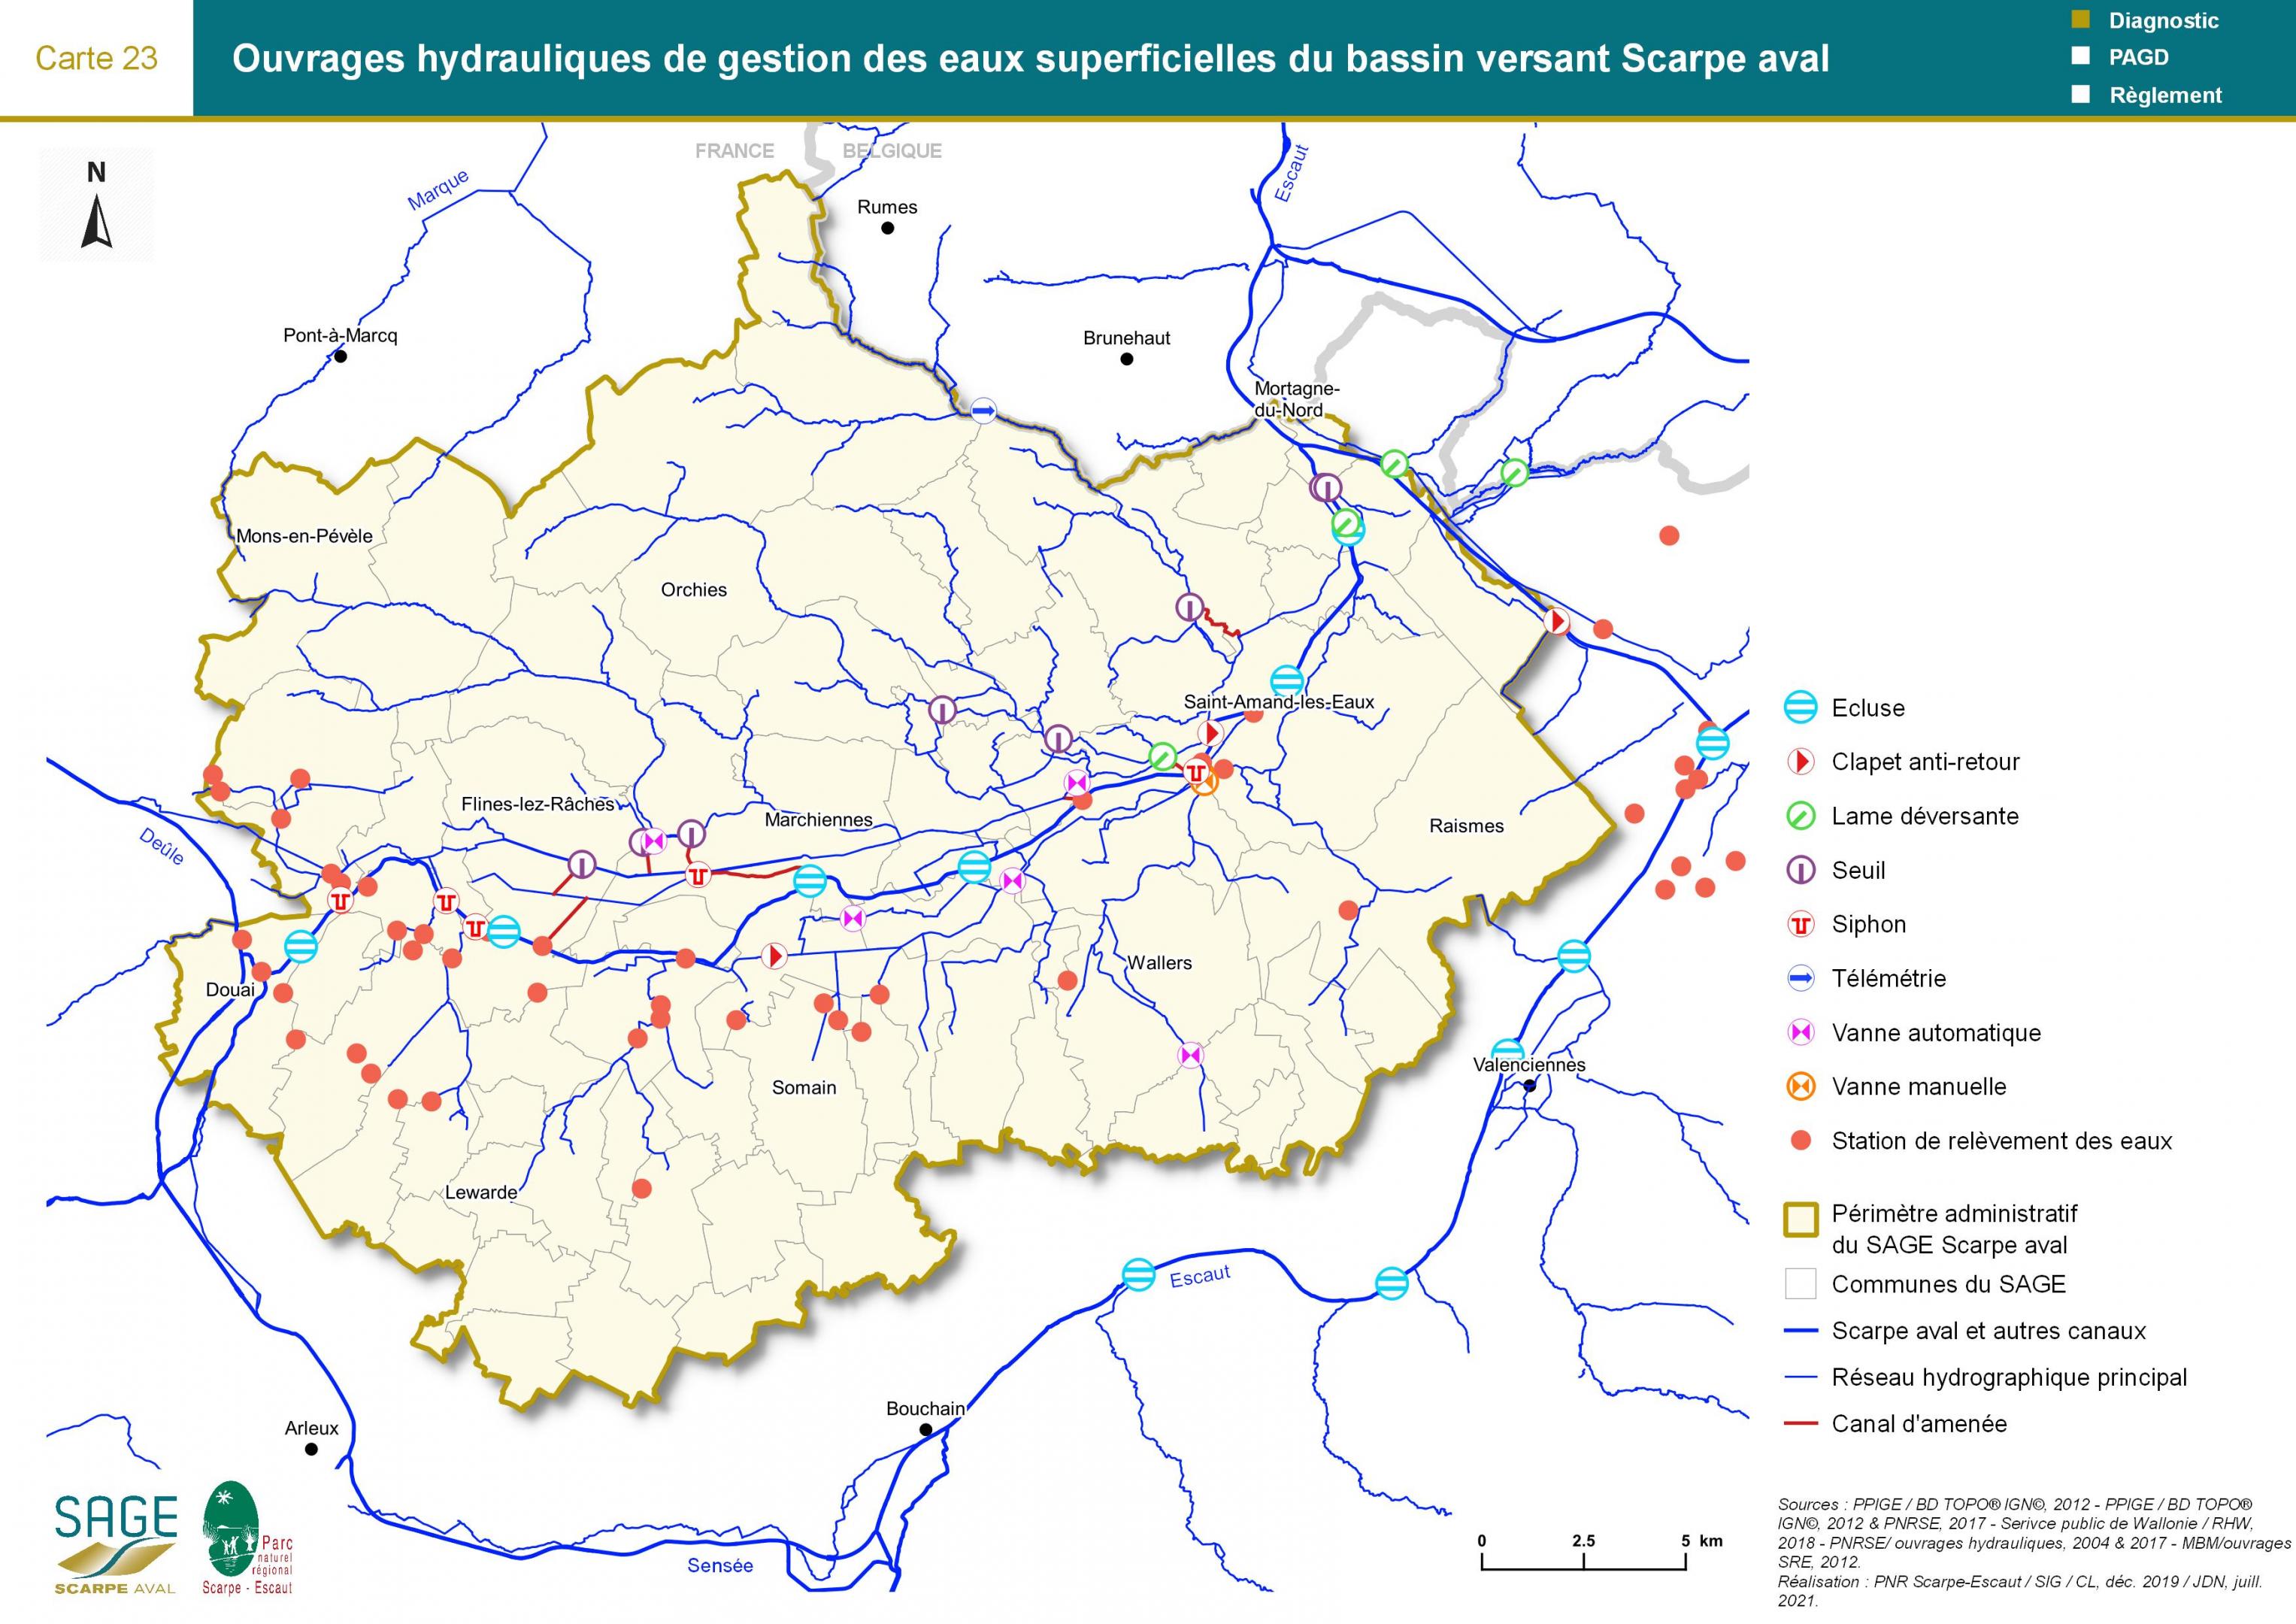 Etat des lieux - Carte 23 : Ouvrages hydrauliques de gestion des eaux superficielles du bassin versant Scarpe aval